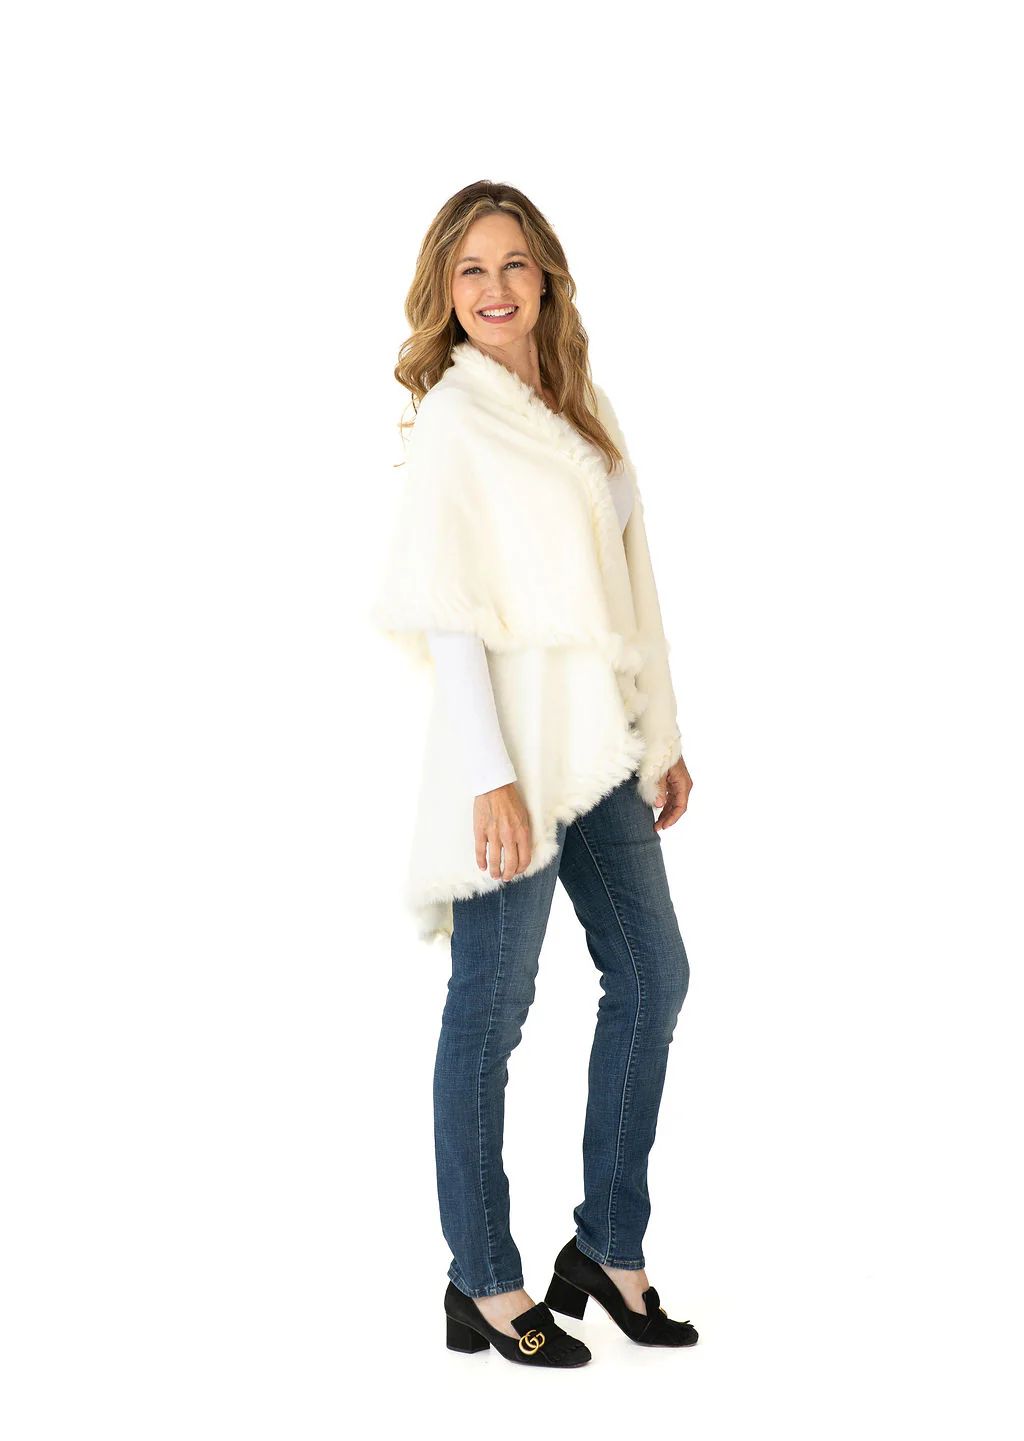 Multi Style Shawl Wrap in Cream with Fur Trim | Heidi Kagan Designs